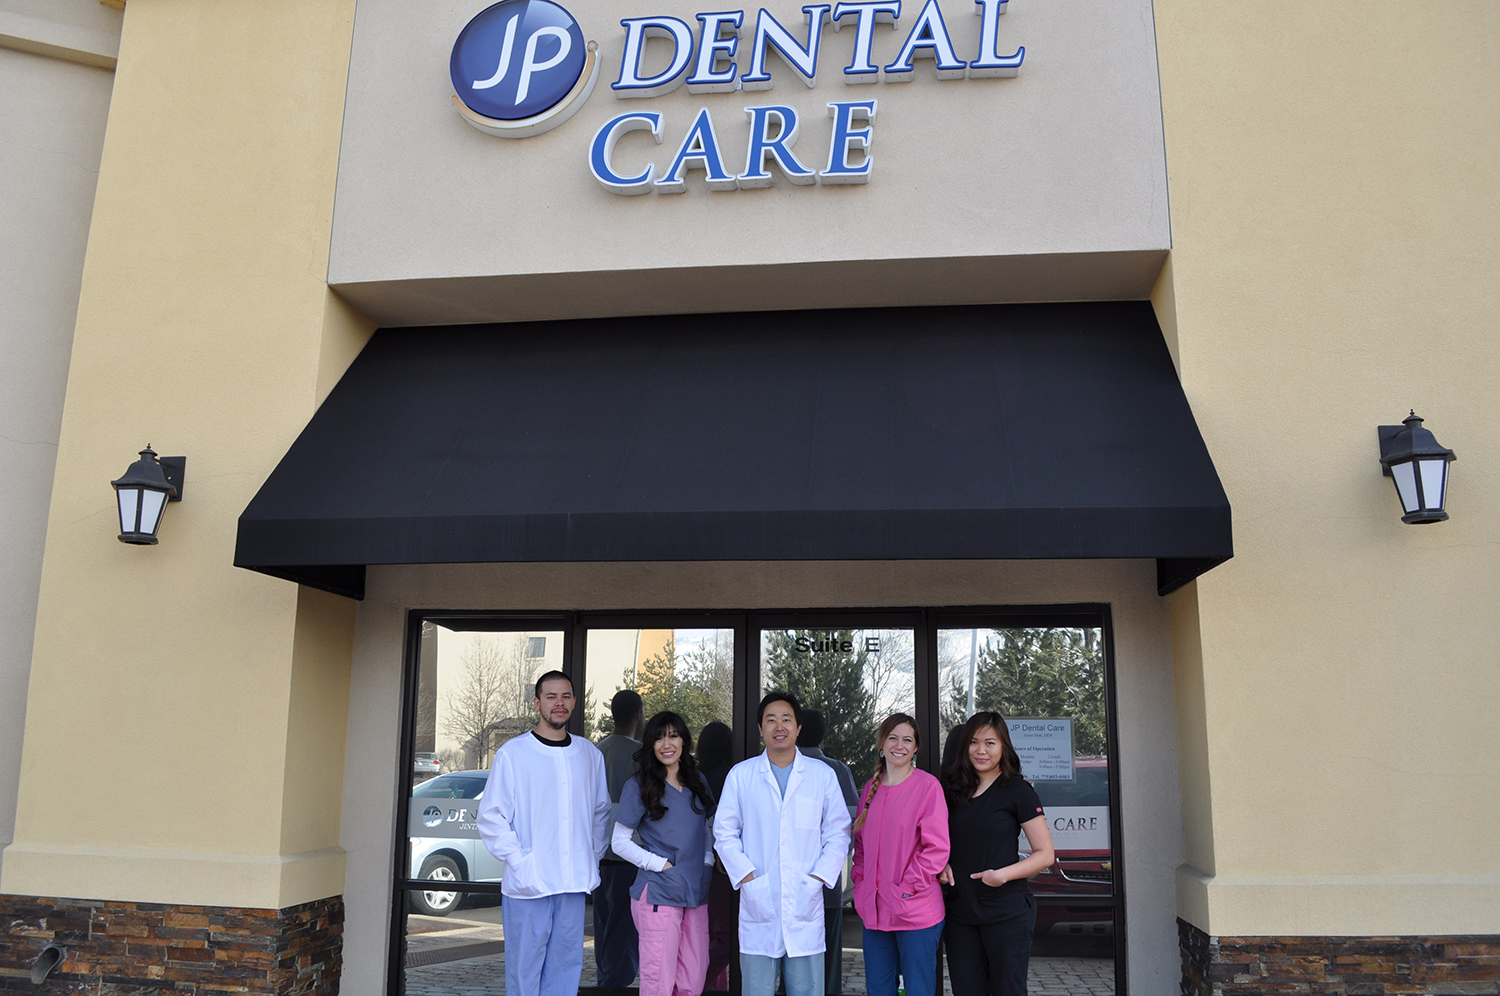 JP Dental Care in Reno, NV